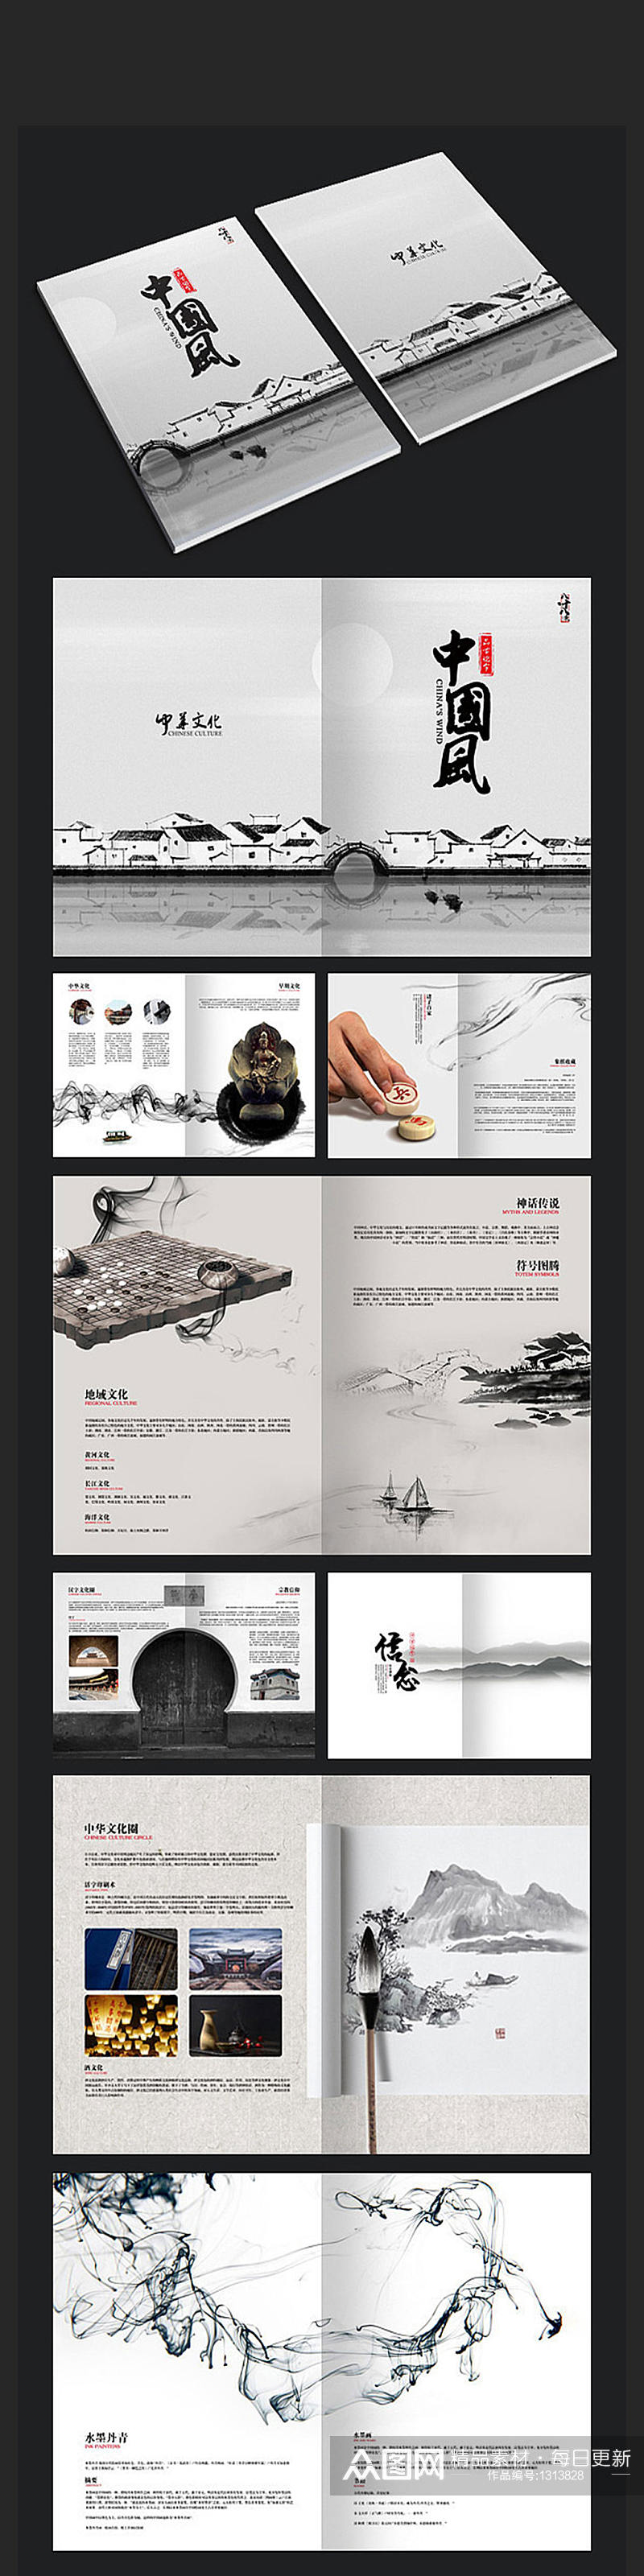 中国风画册排版设计素材